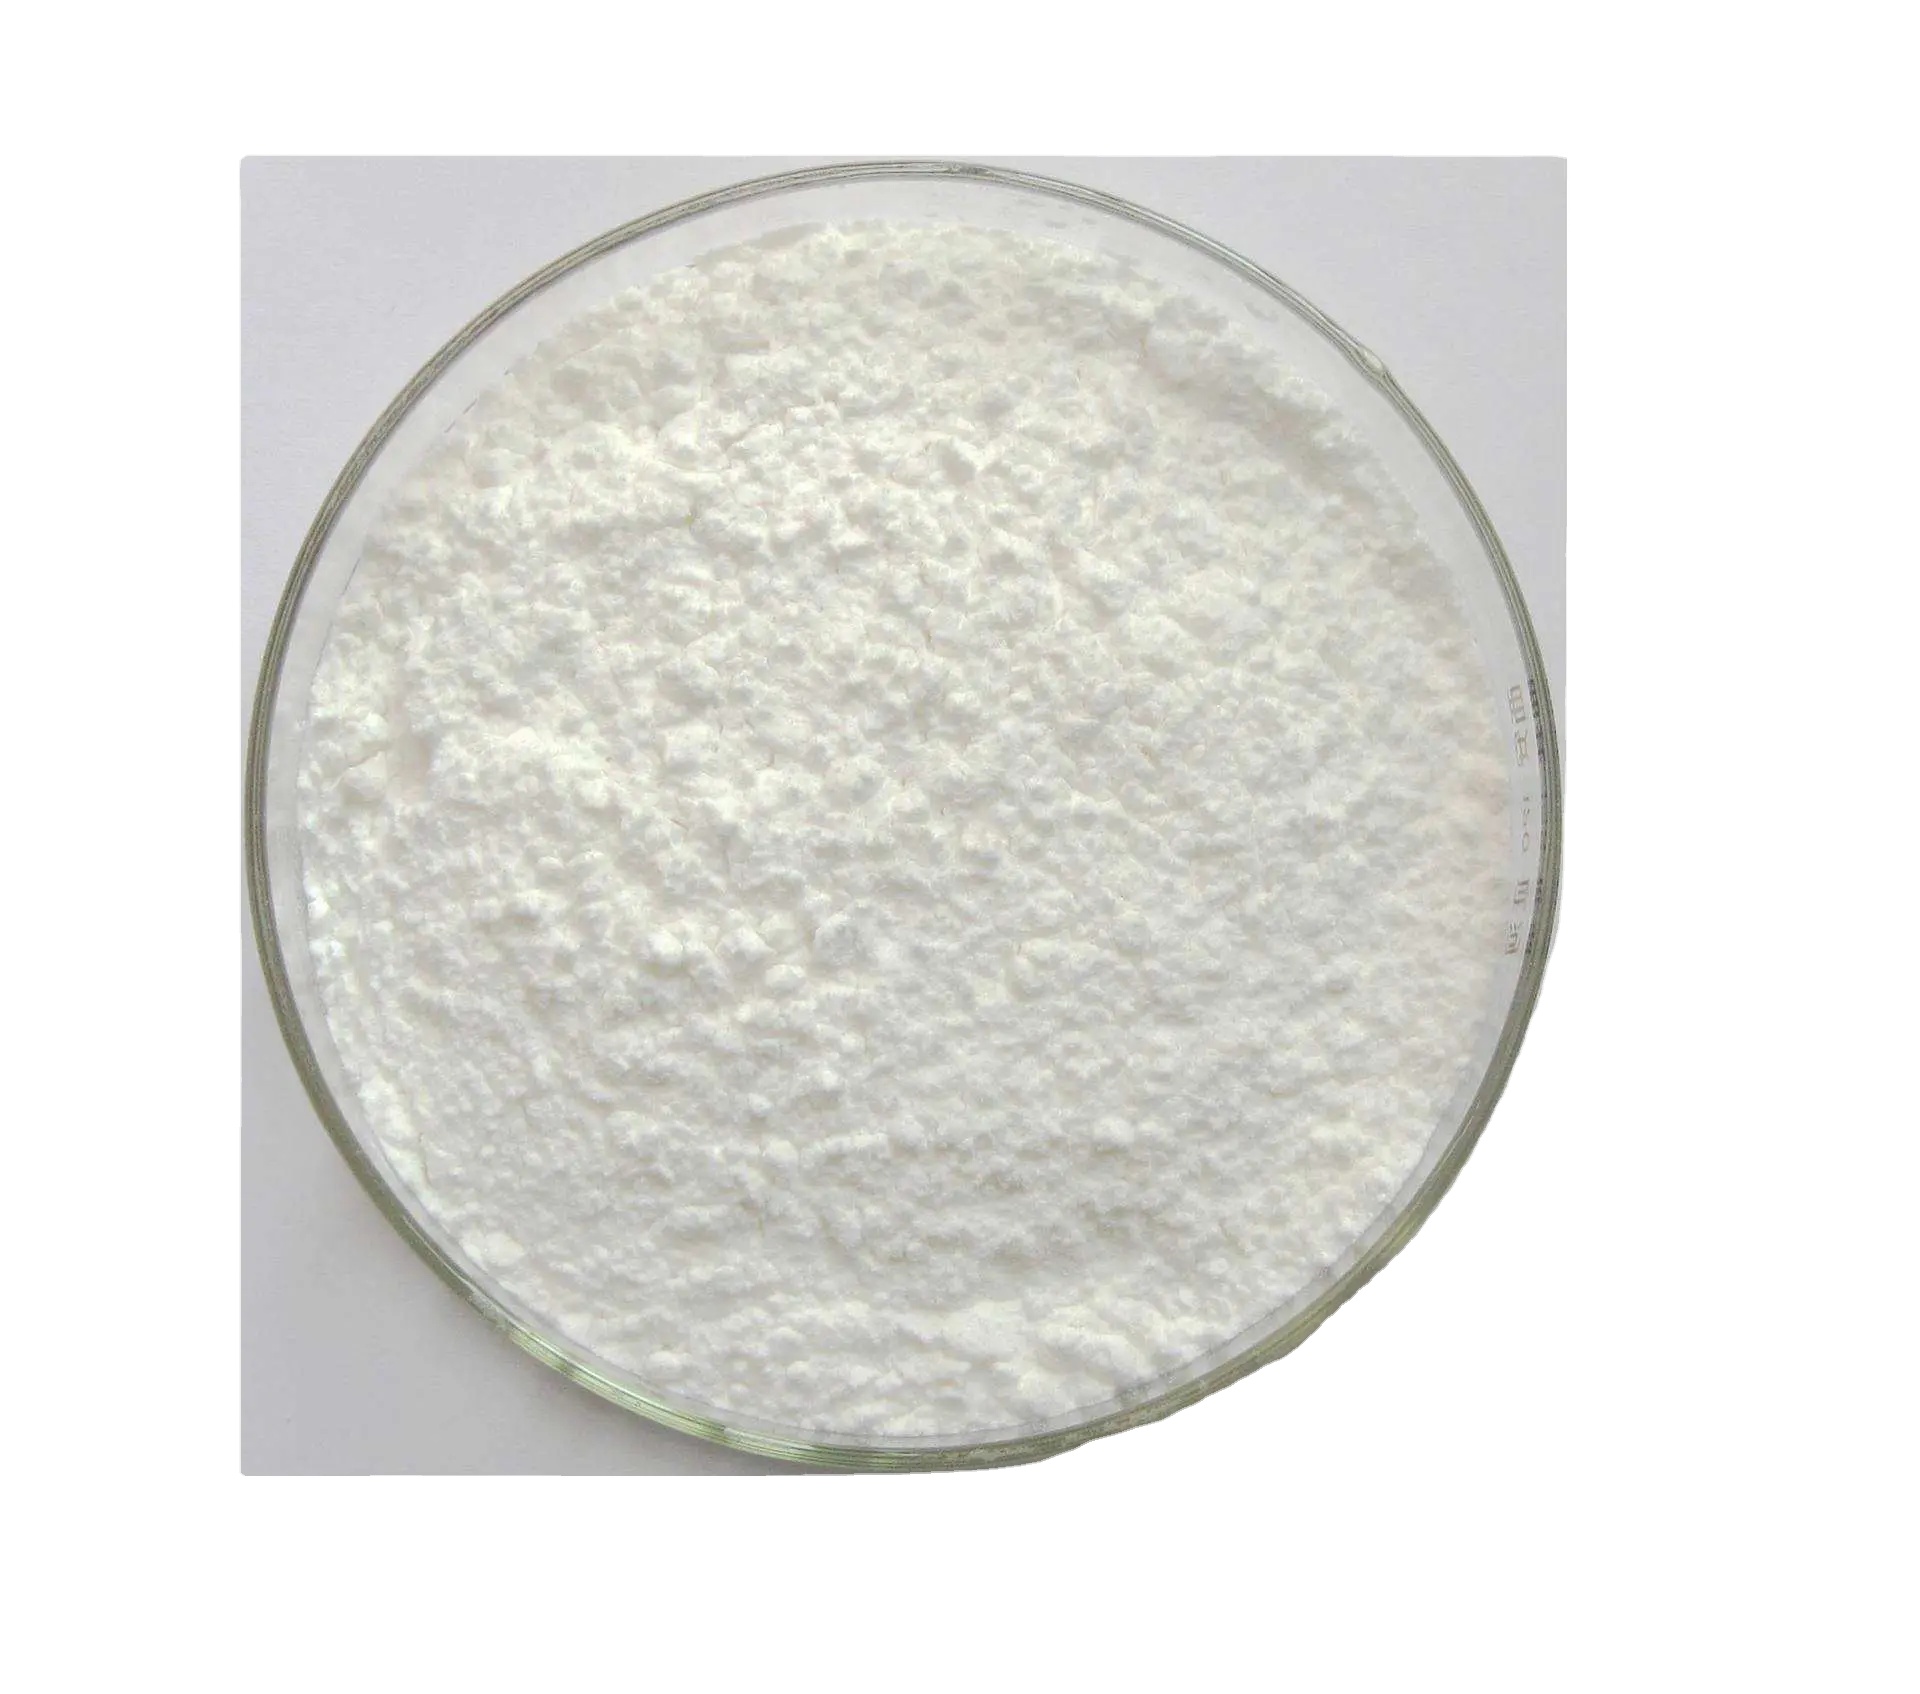 Vásárlás Fehérítőszer 4,4''-bisz(klór-metil)-1,1''-bifenil Cas1667-10-3,Fehérítőszer 4,4''-bisz(klór-metil)-1,1''-bifenil Cas1667-10-3 árak,Fehérítőszer 4,4''-bisz(klór-metil)-1,1''-bifenil Cas1667-10-3 Márka,Fehérítőszer 4,4''-bisz(klór-metil)-1,1''-bifenil Cas1667-10-3 Gyártó,Fehérítőszer 4,4''-bisz(klór-metil)-1,1''-bifenil Cas1667-10-3 Idézetek. Fehérítőszer 4,4''-bisz(klór-metil)-1,1''-bifenil Cas1667-10-3 Társaság,